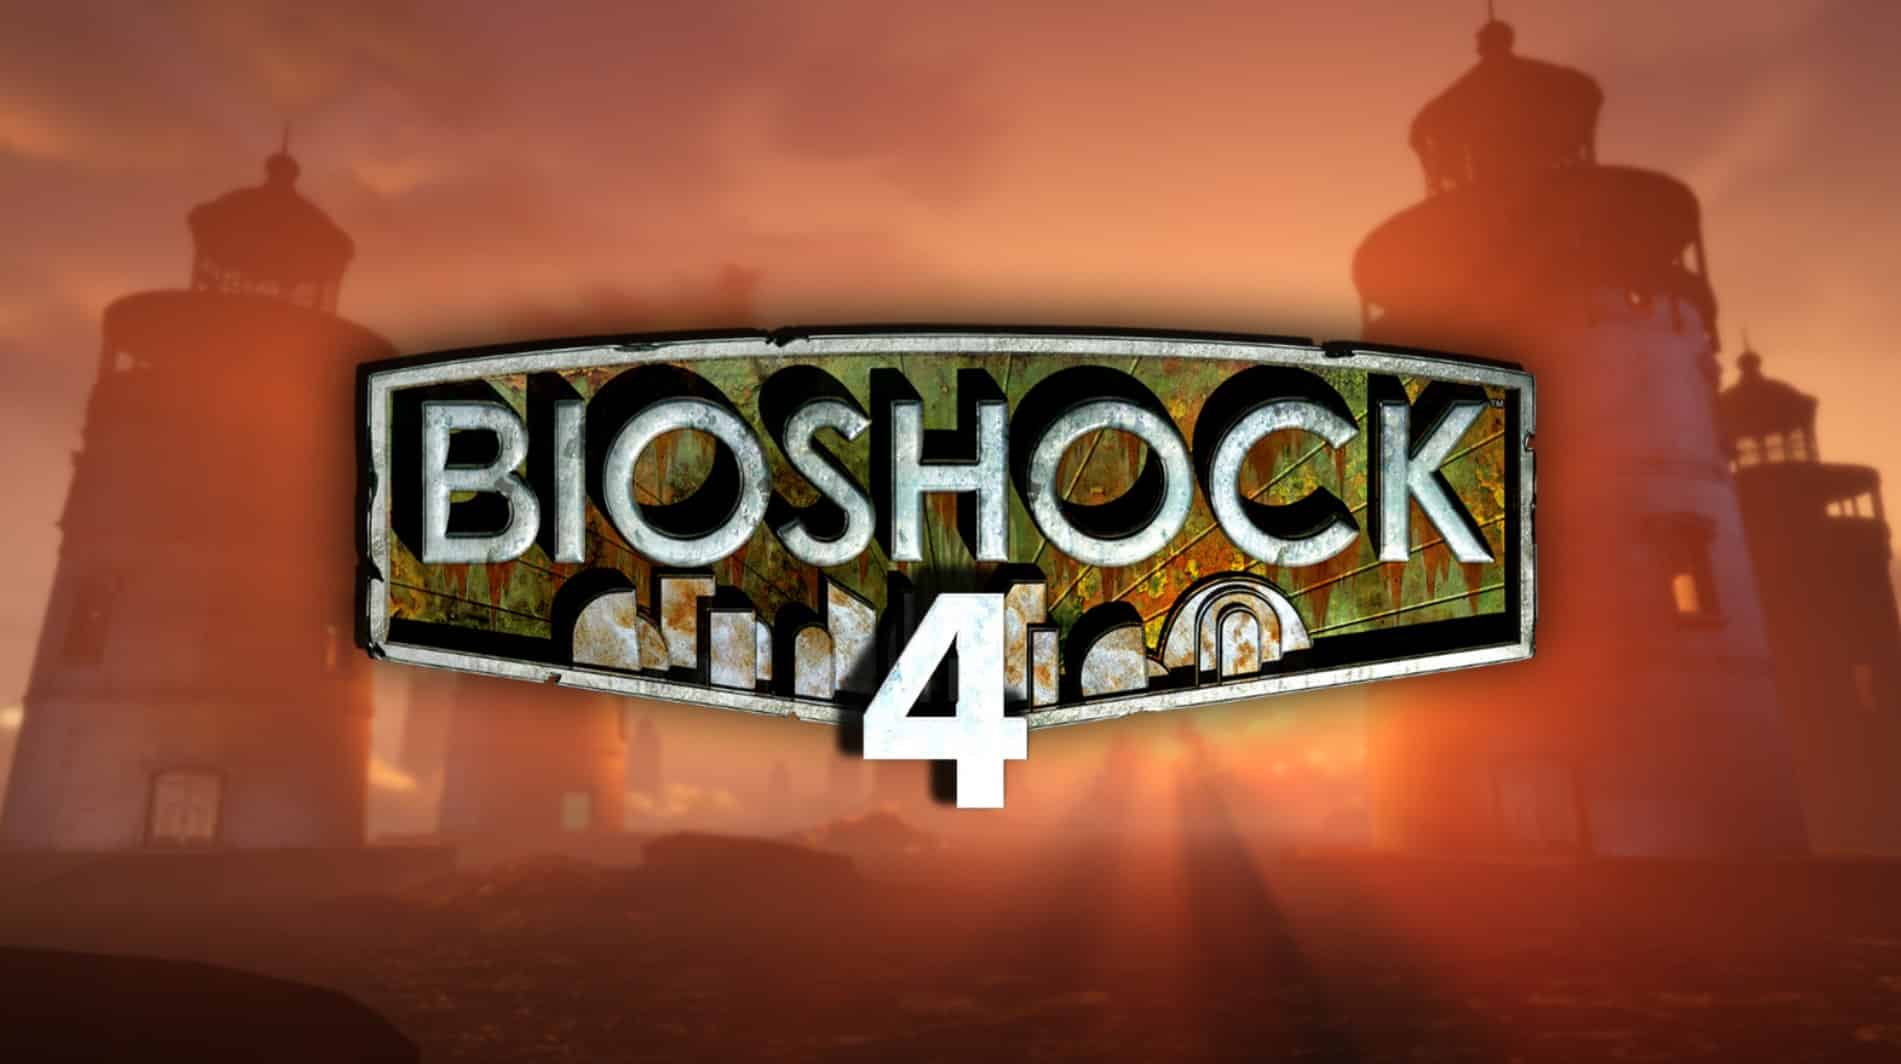 BioShock es una de las franquicias de videojuegos más importante de las últimas generaciones. Sus juegos han marcado escuela y han sido referencia de grandes creaciones. Su cuarta entrega pinta para ser una modalidad completamente distinta. 